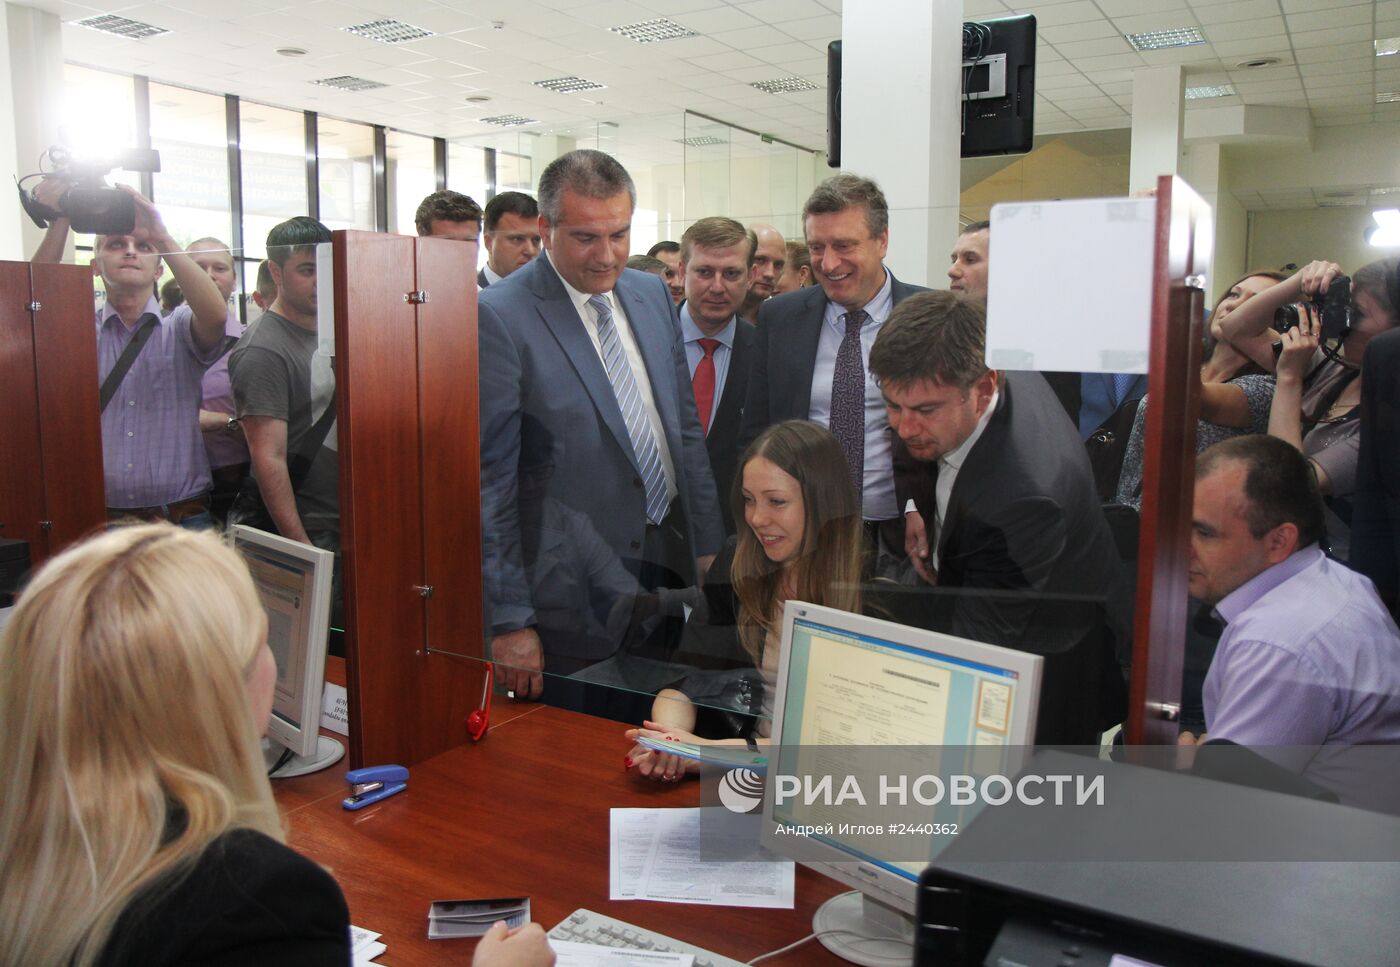 Открытие первого Республиканского центра по регистрации прав собственности на недвижимое имущество в системе Росреестра Российской Федерации